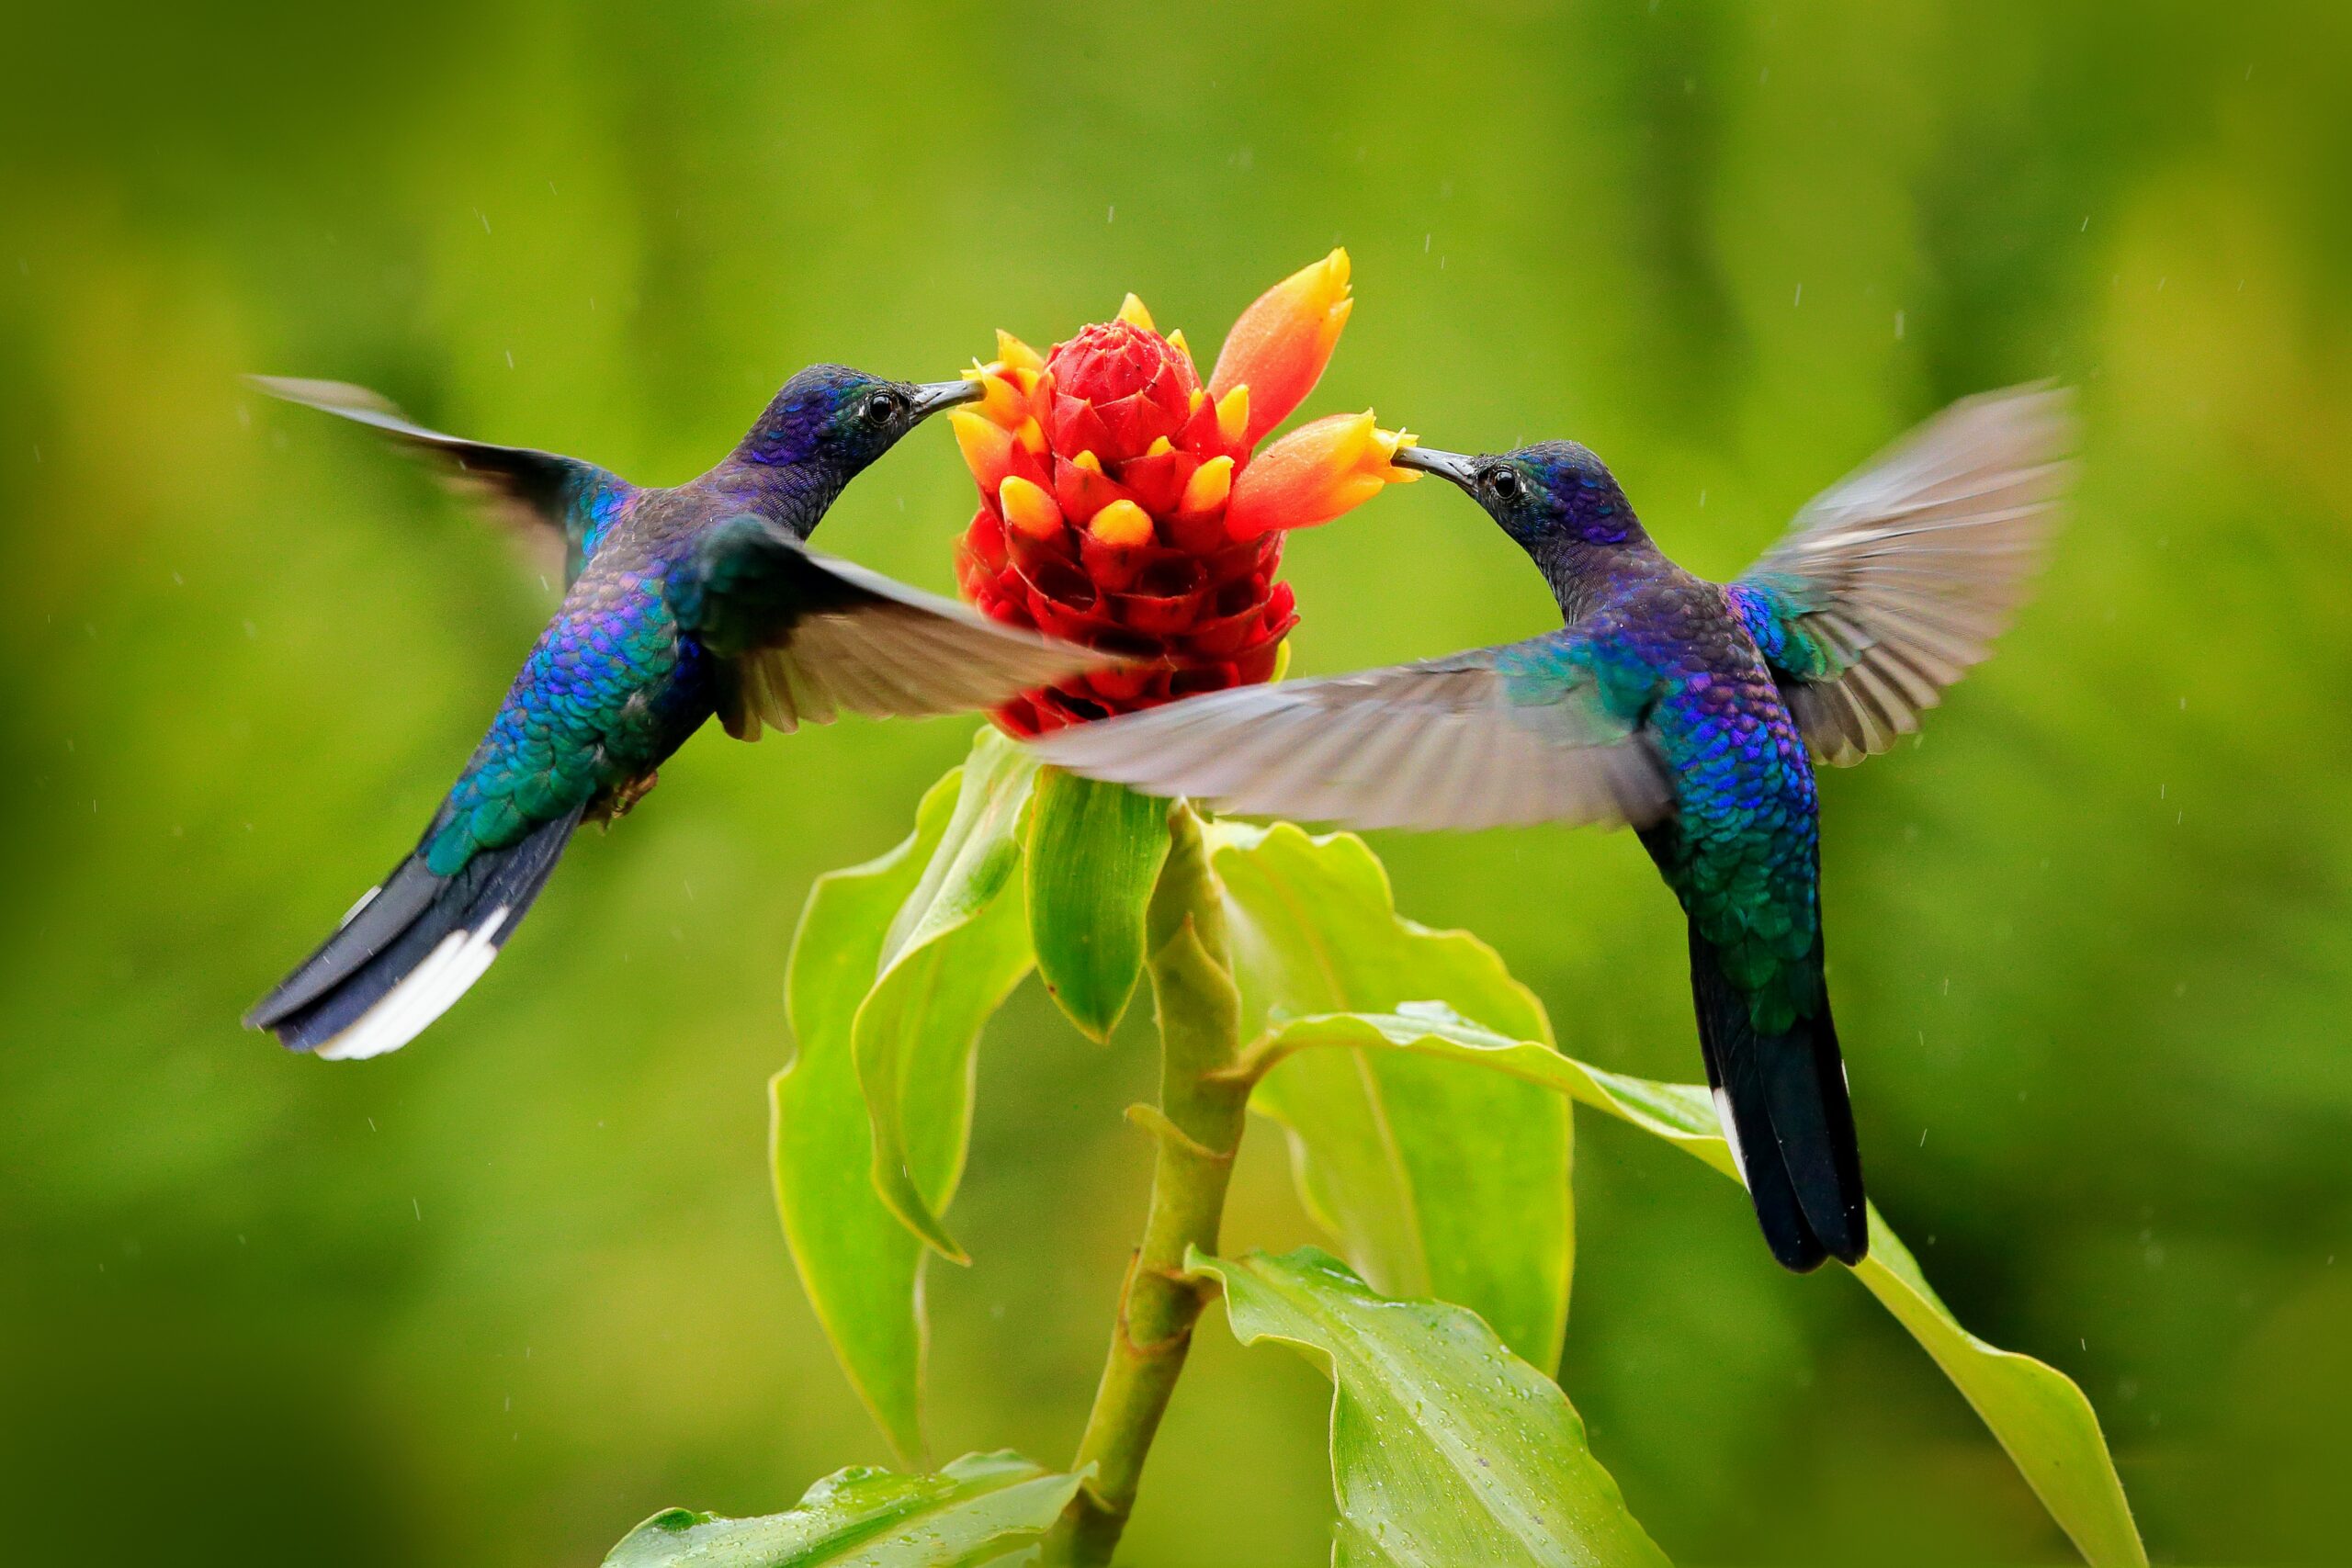 Les colibris repèrent le danger grâce à leur odorat - Sciences et